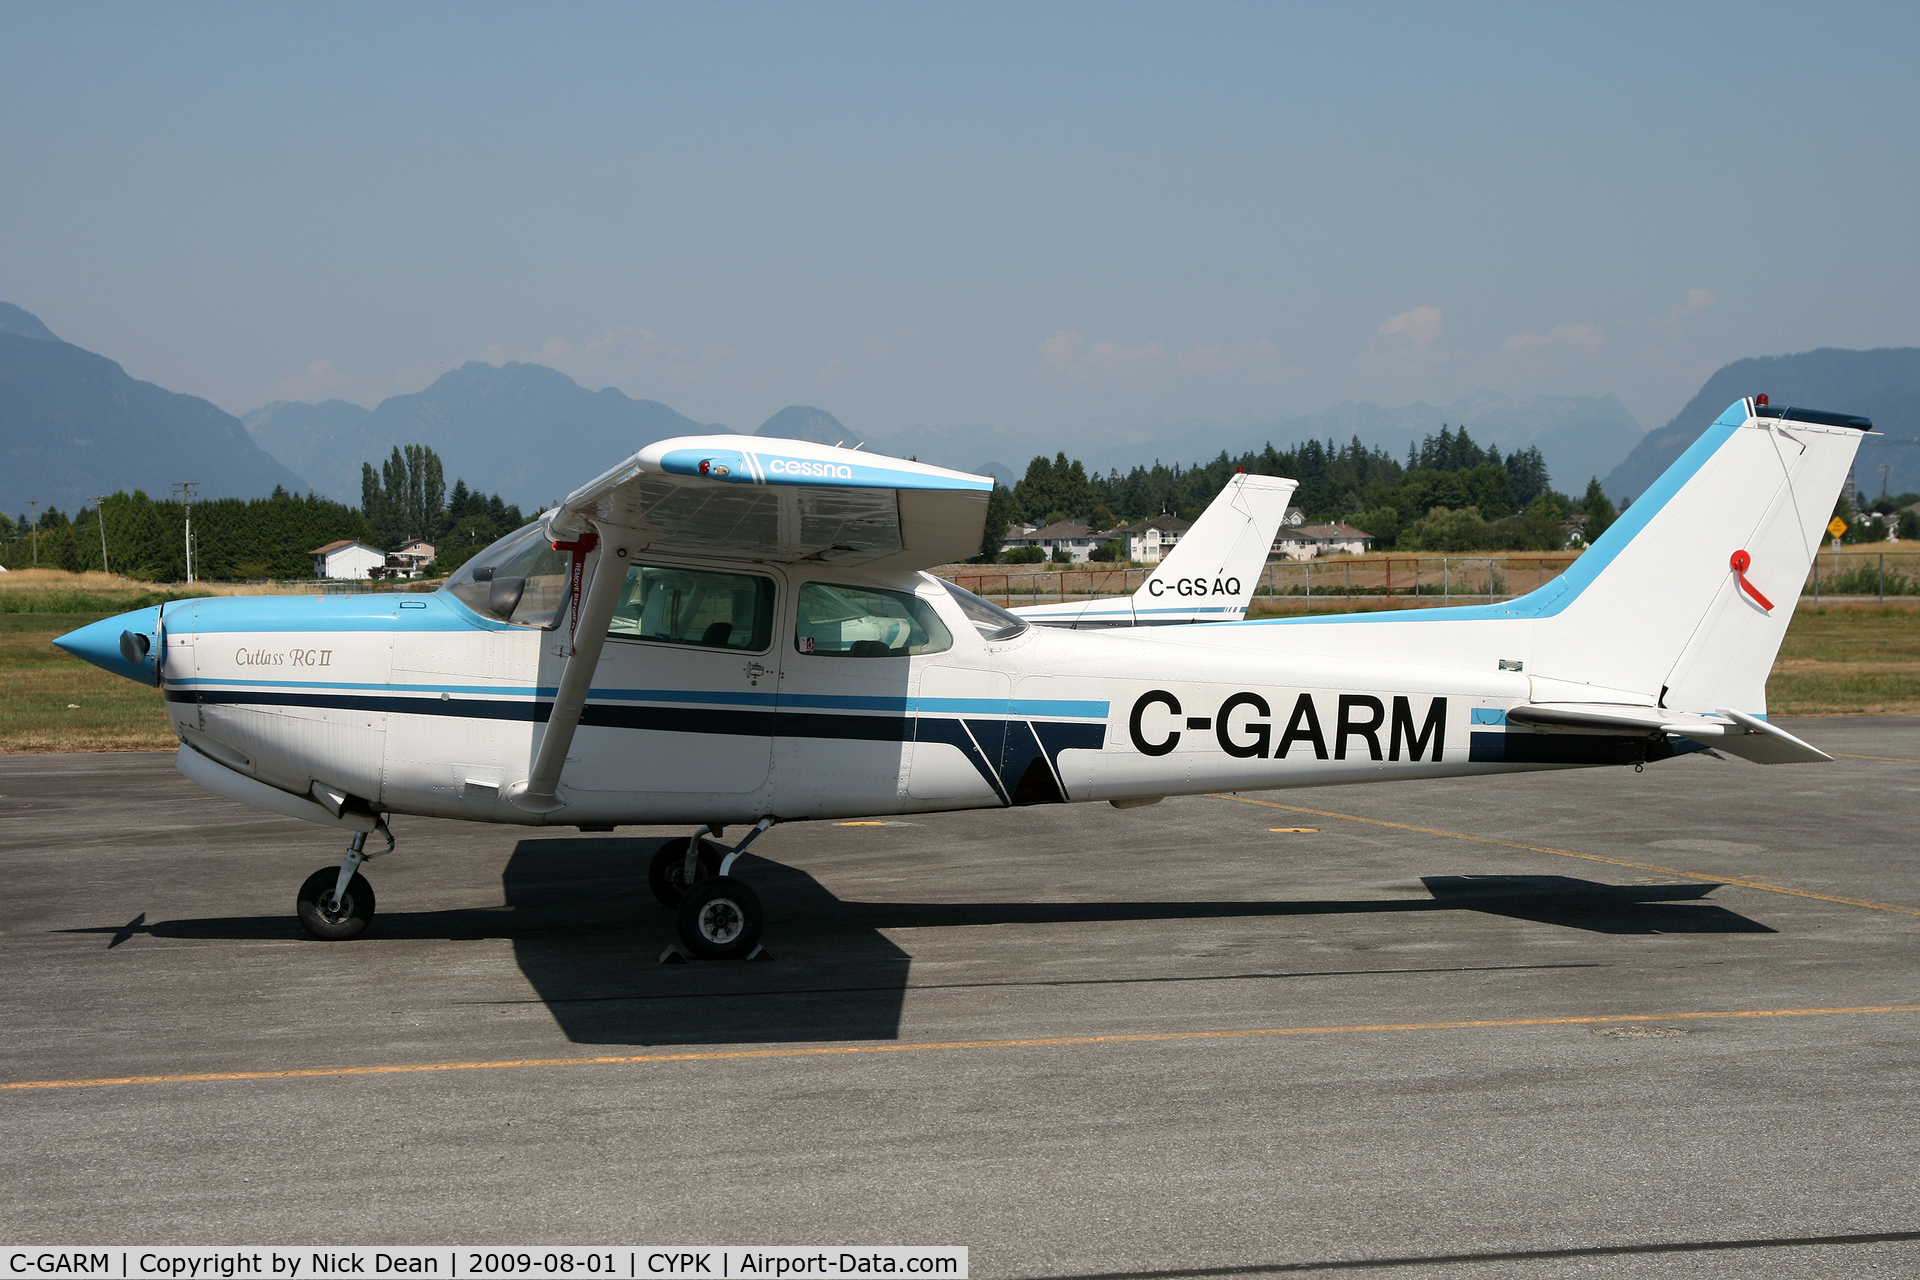 C-GARM, 1981 Cessna 172RG Cutlass RG C/N 172RG0847, CYPK